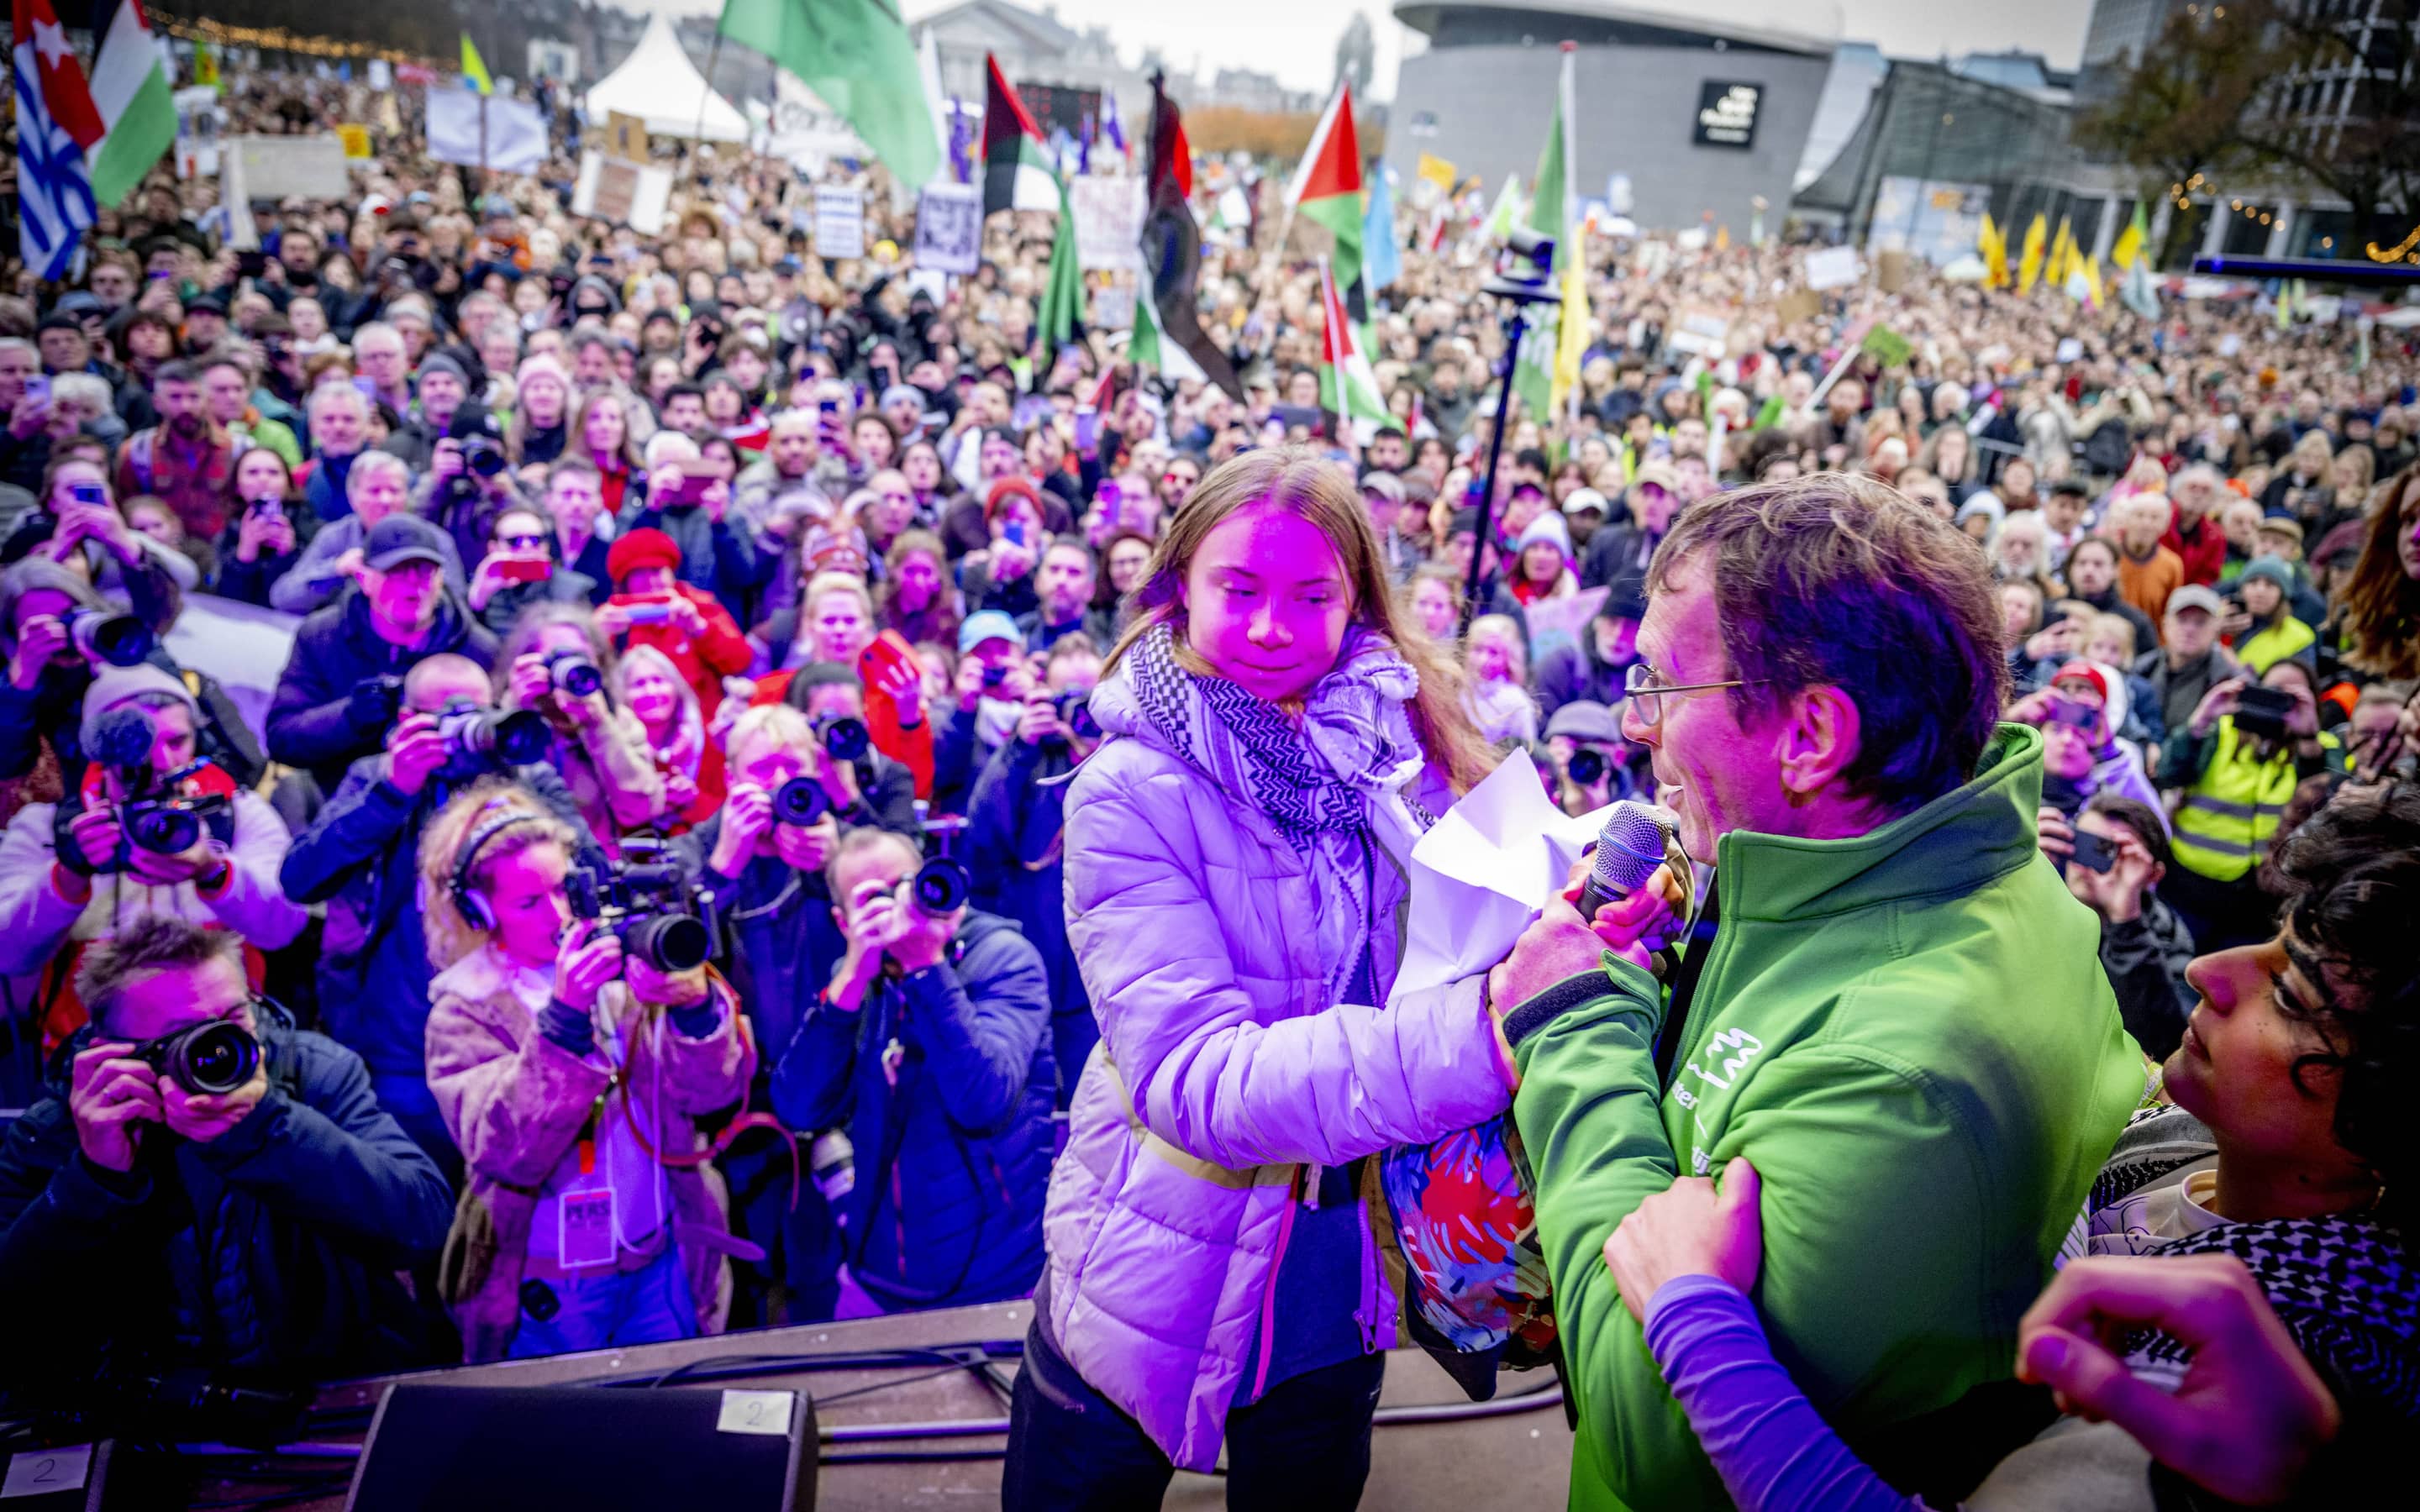 Sonntag, Amsterdam, 85 000 Menschen: Greta Thunberg betritt die Bühne und solidarisiert sich mit den Palästinensern, ein Mann stürmt zu ihr hoch und sagt, er will hier über das Klima reden, nicht ihre politische Ansichten hören.